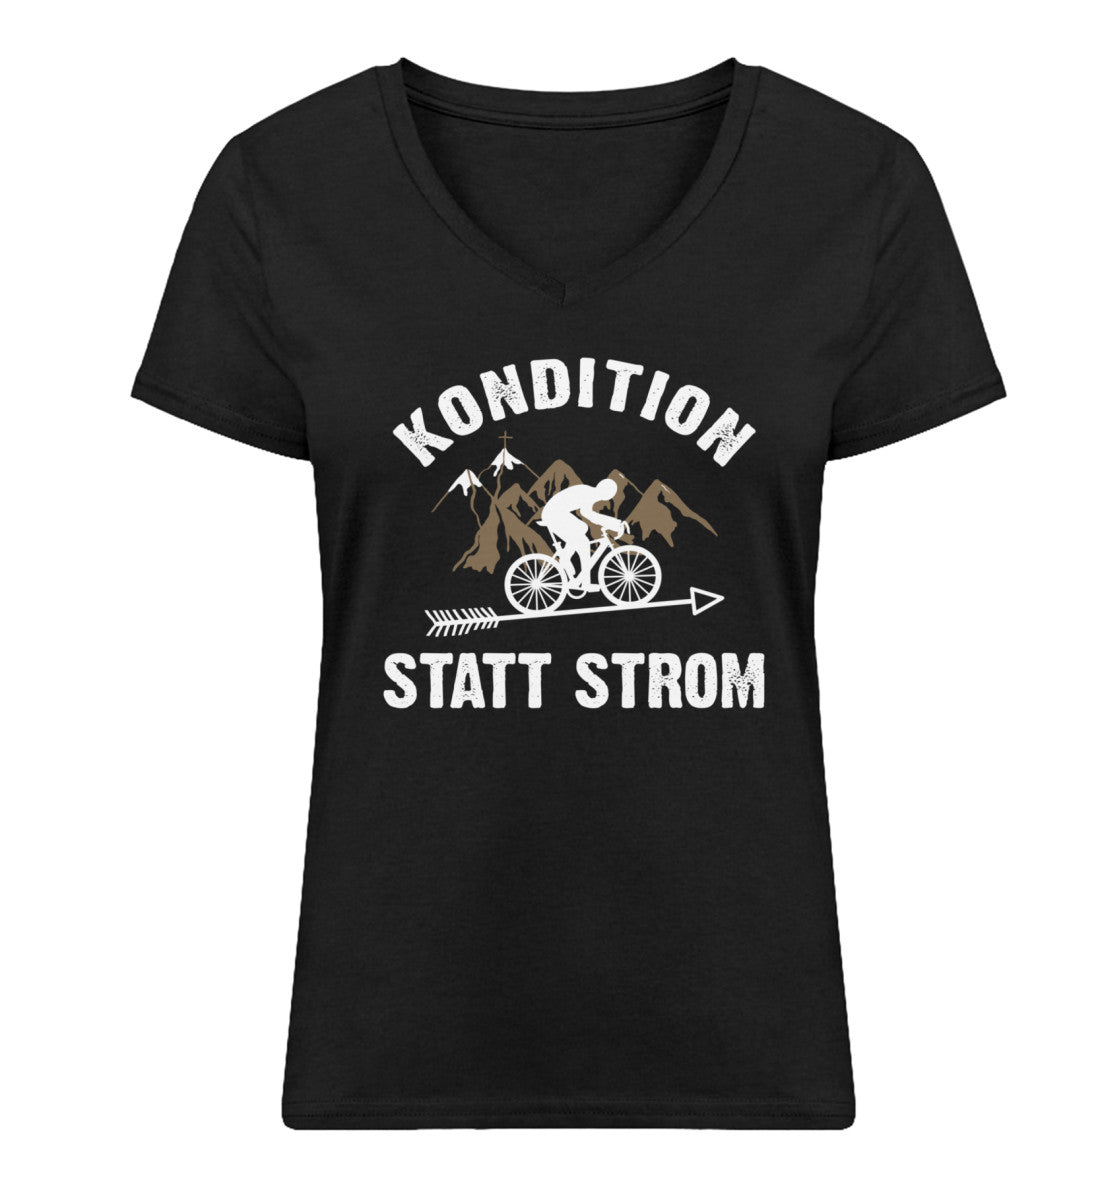 Kondition statt Strom - Damen Organic V-Neck Shirt fahrrad mountainbike Schwarz